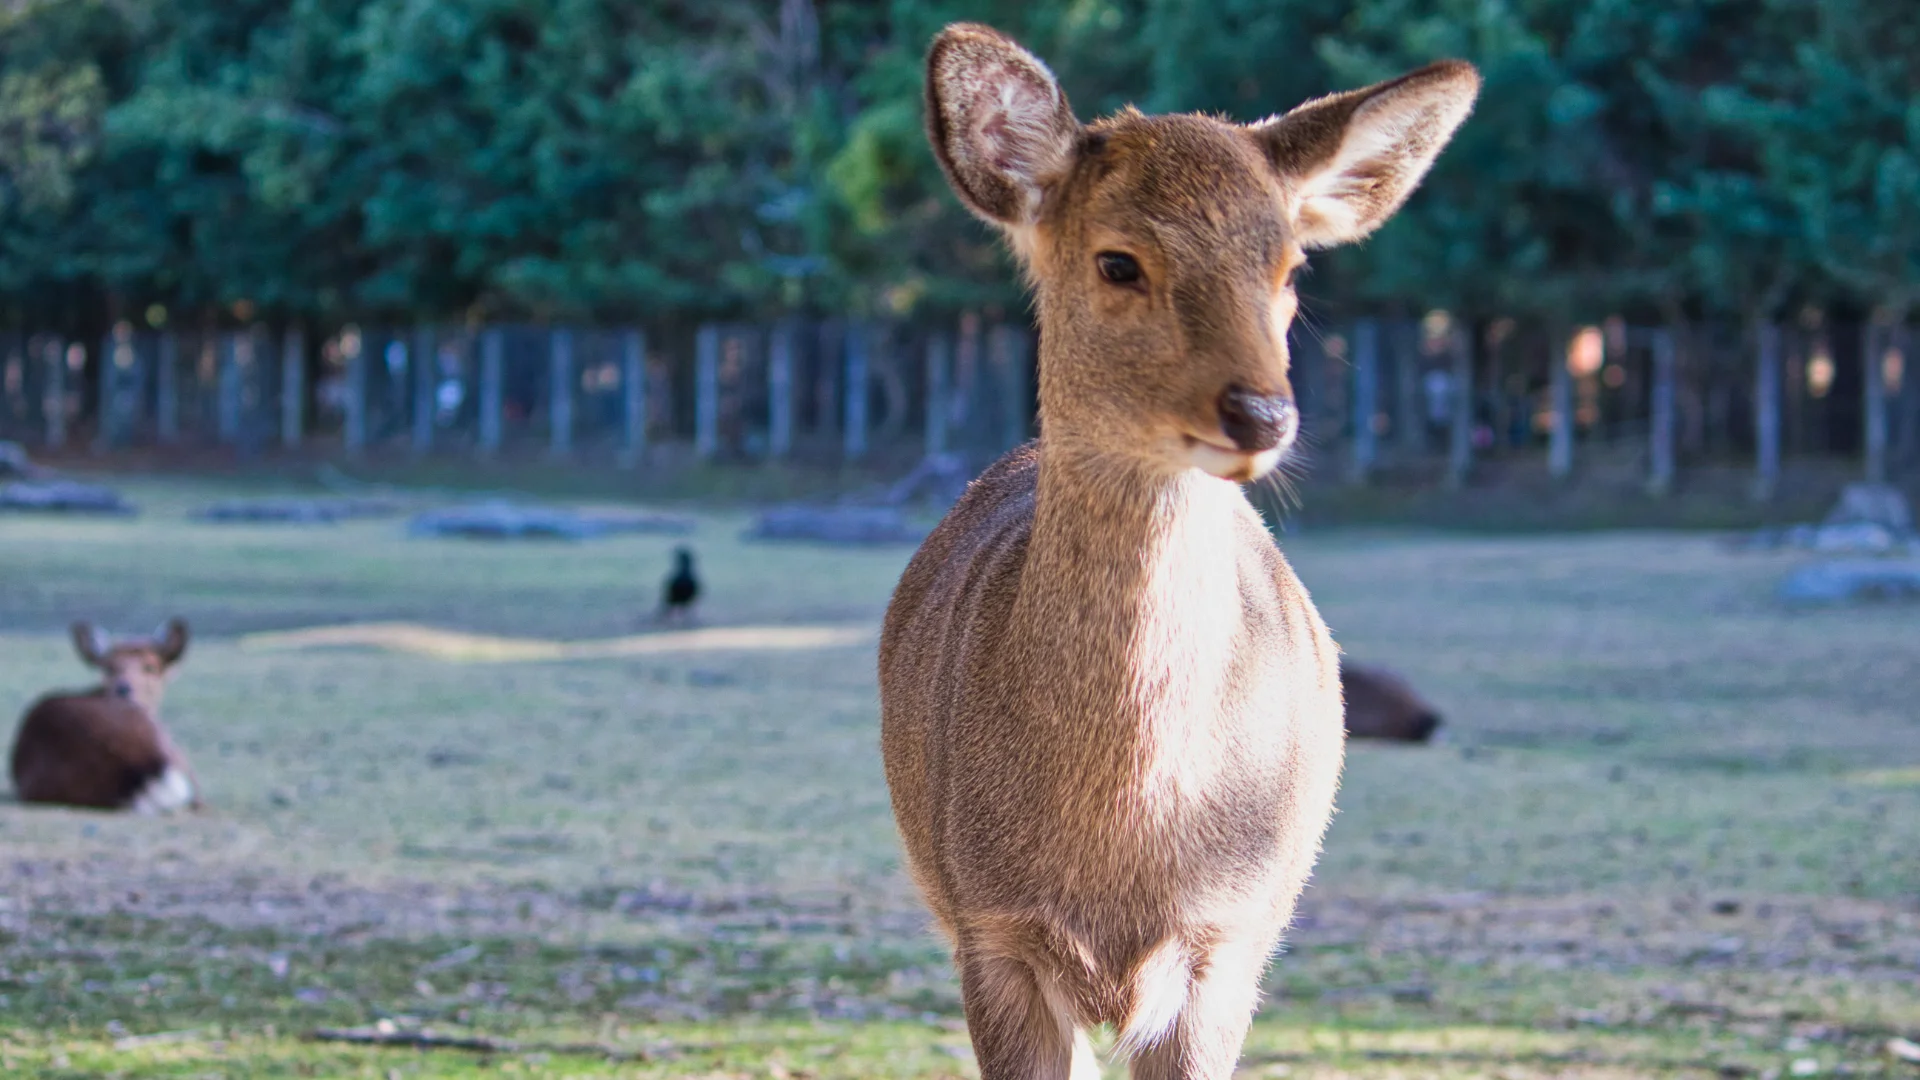 Deer of Nara